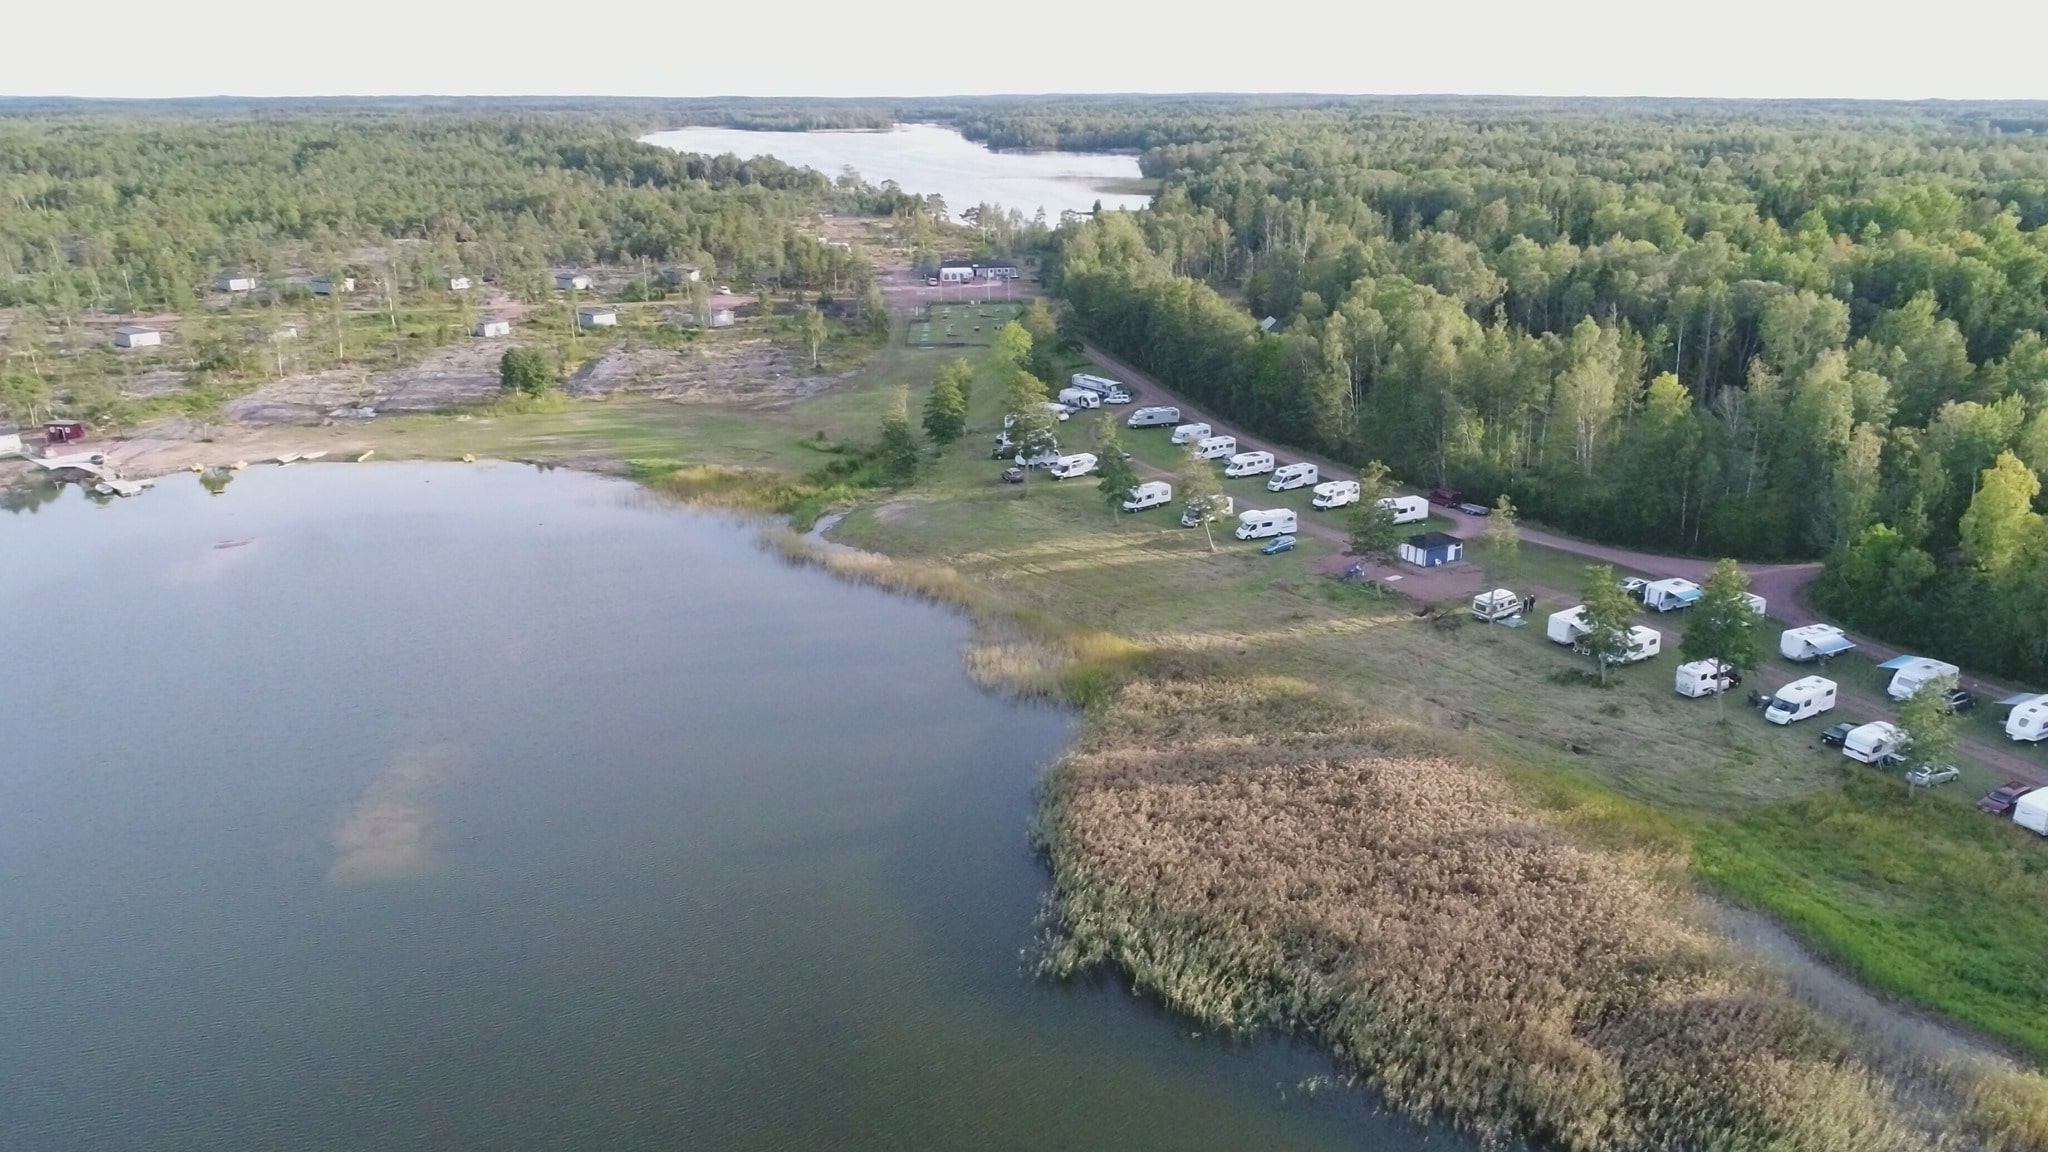 Eckerö Camping & Stugor | Campcation